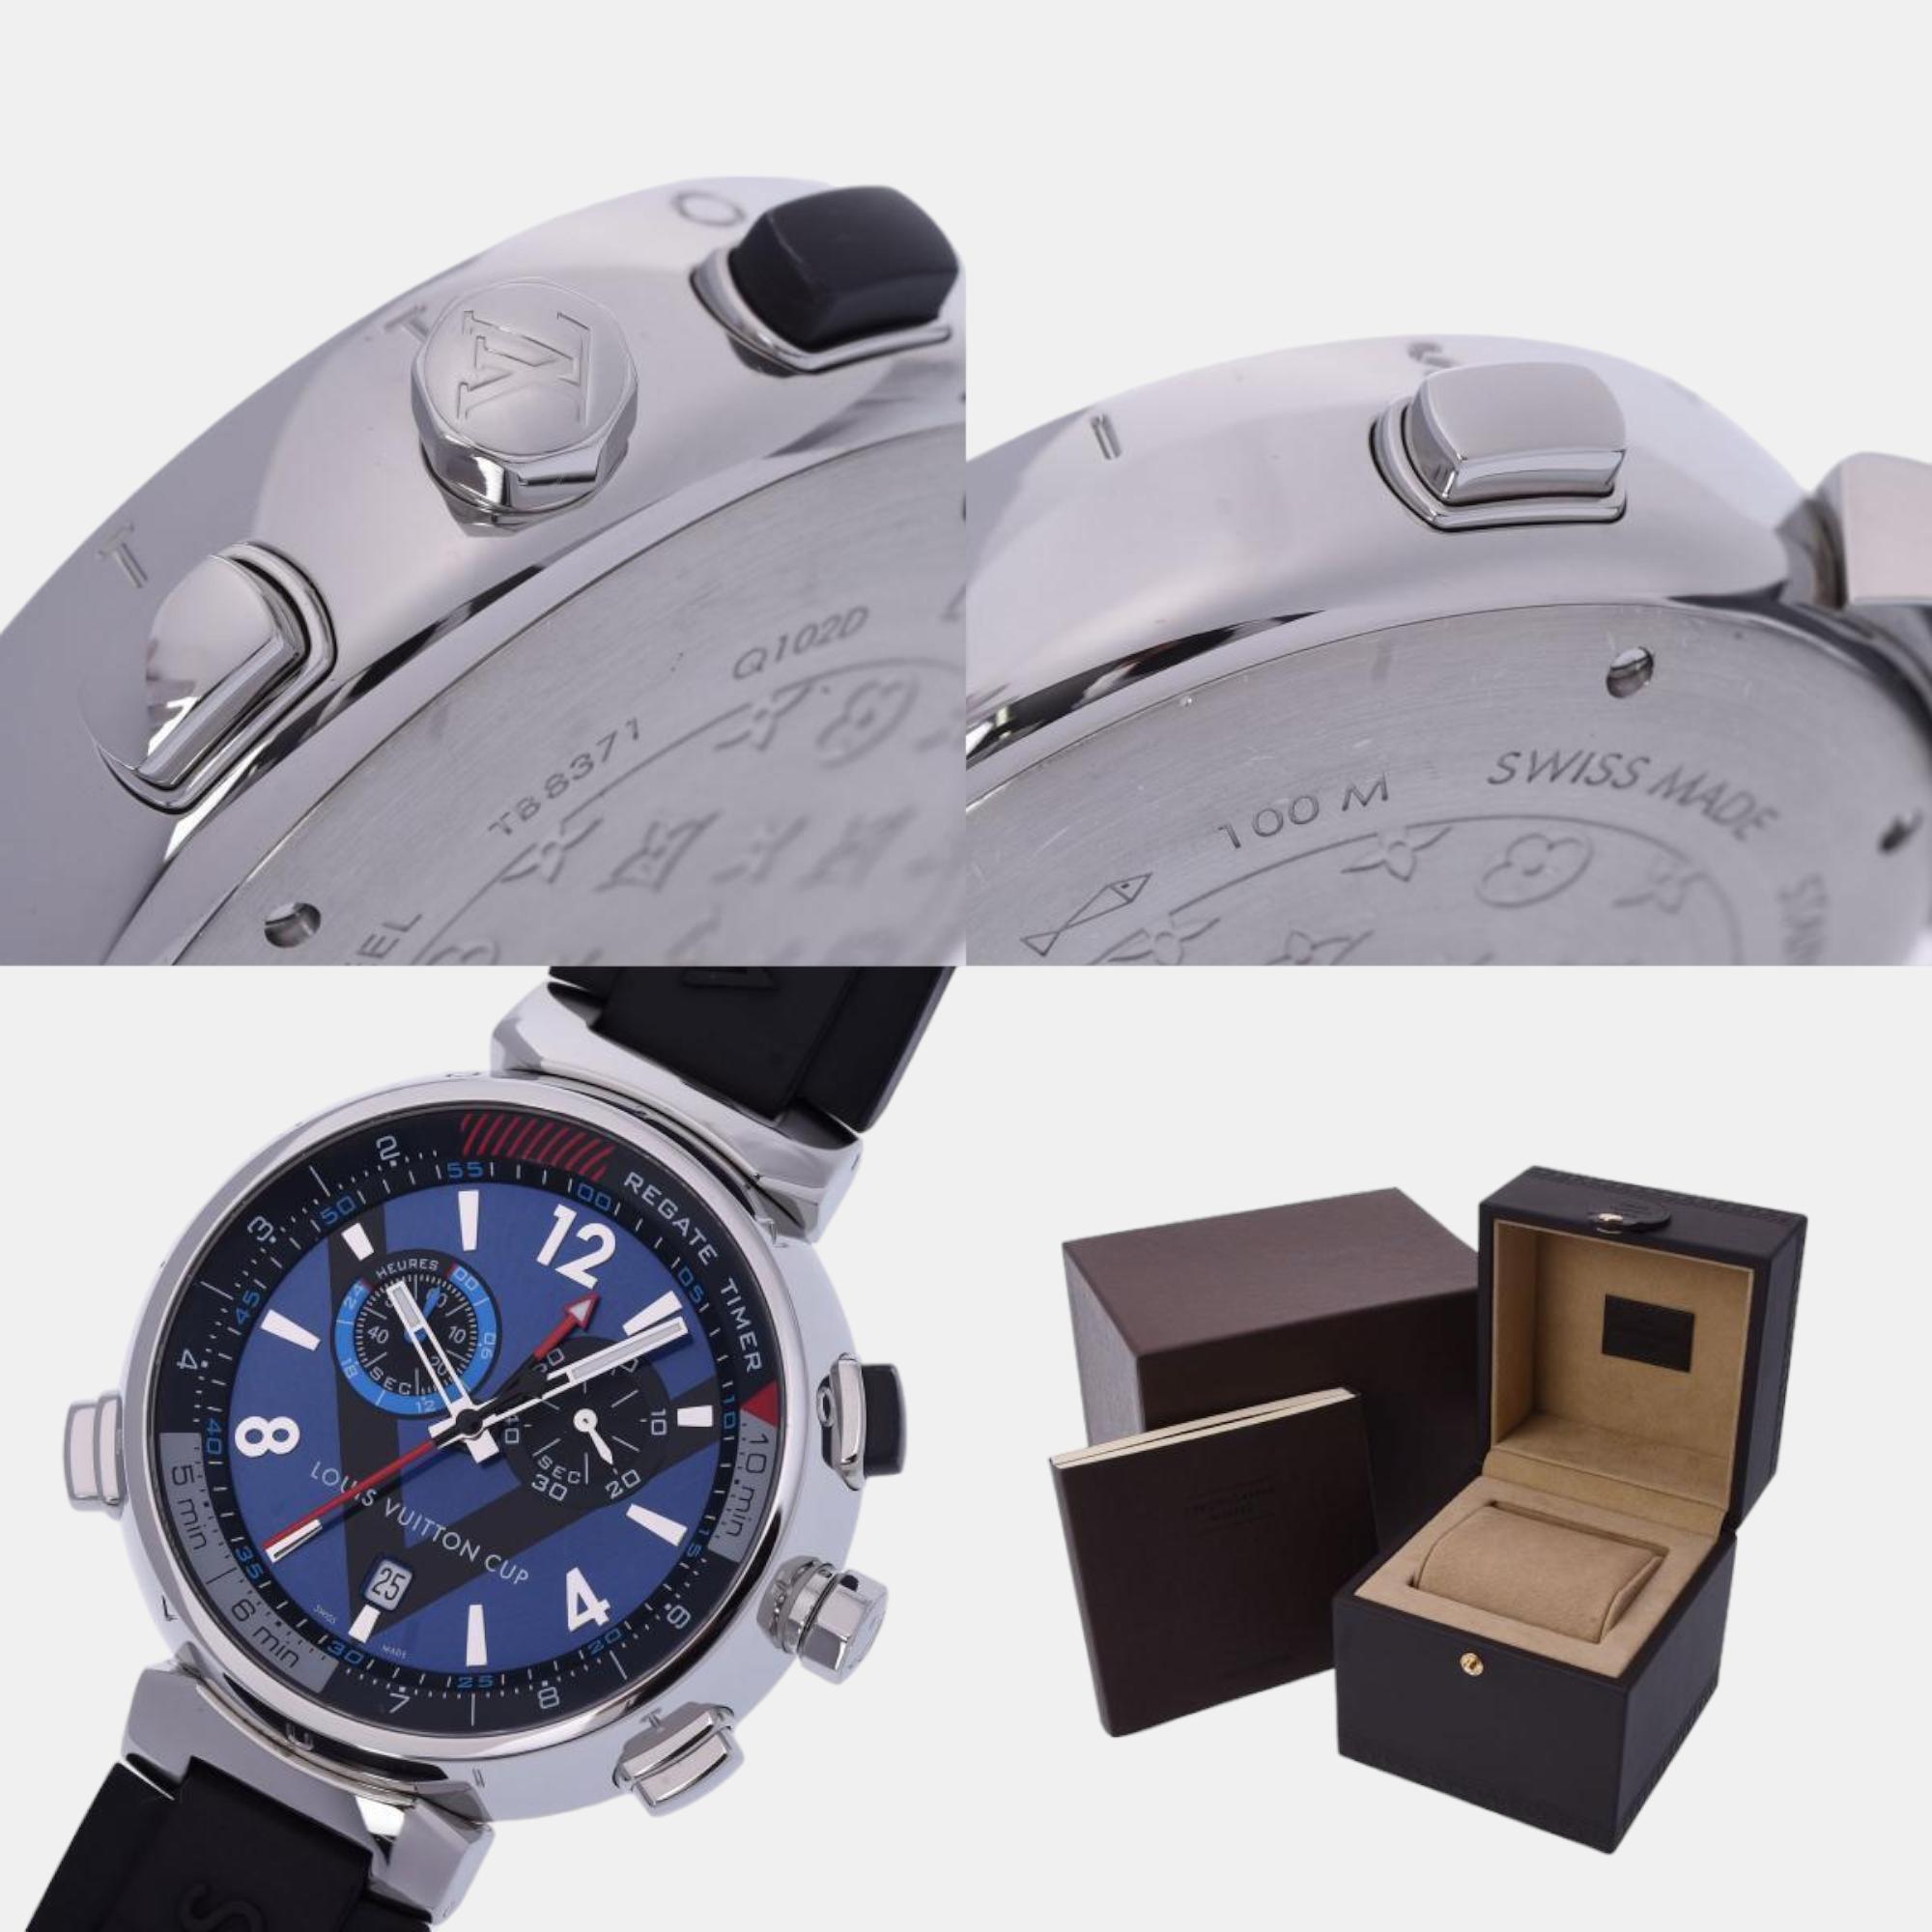 Louis Vuitton Blue Stainless Steel Tambour Q102D Quartz Men's Wristwatch 44 Mm